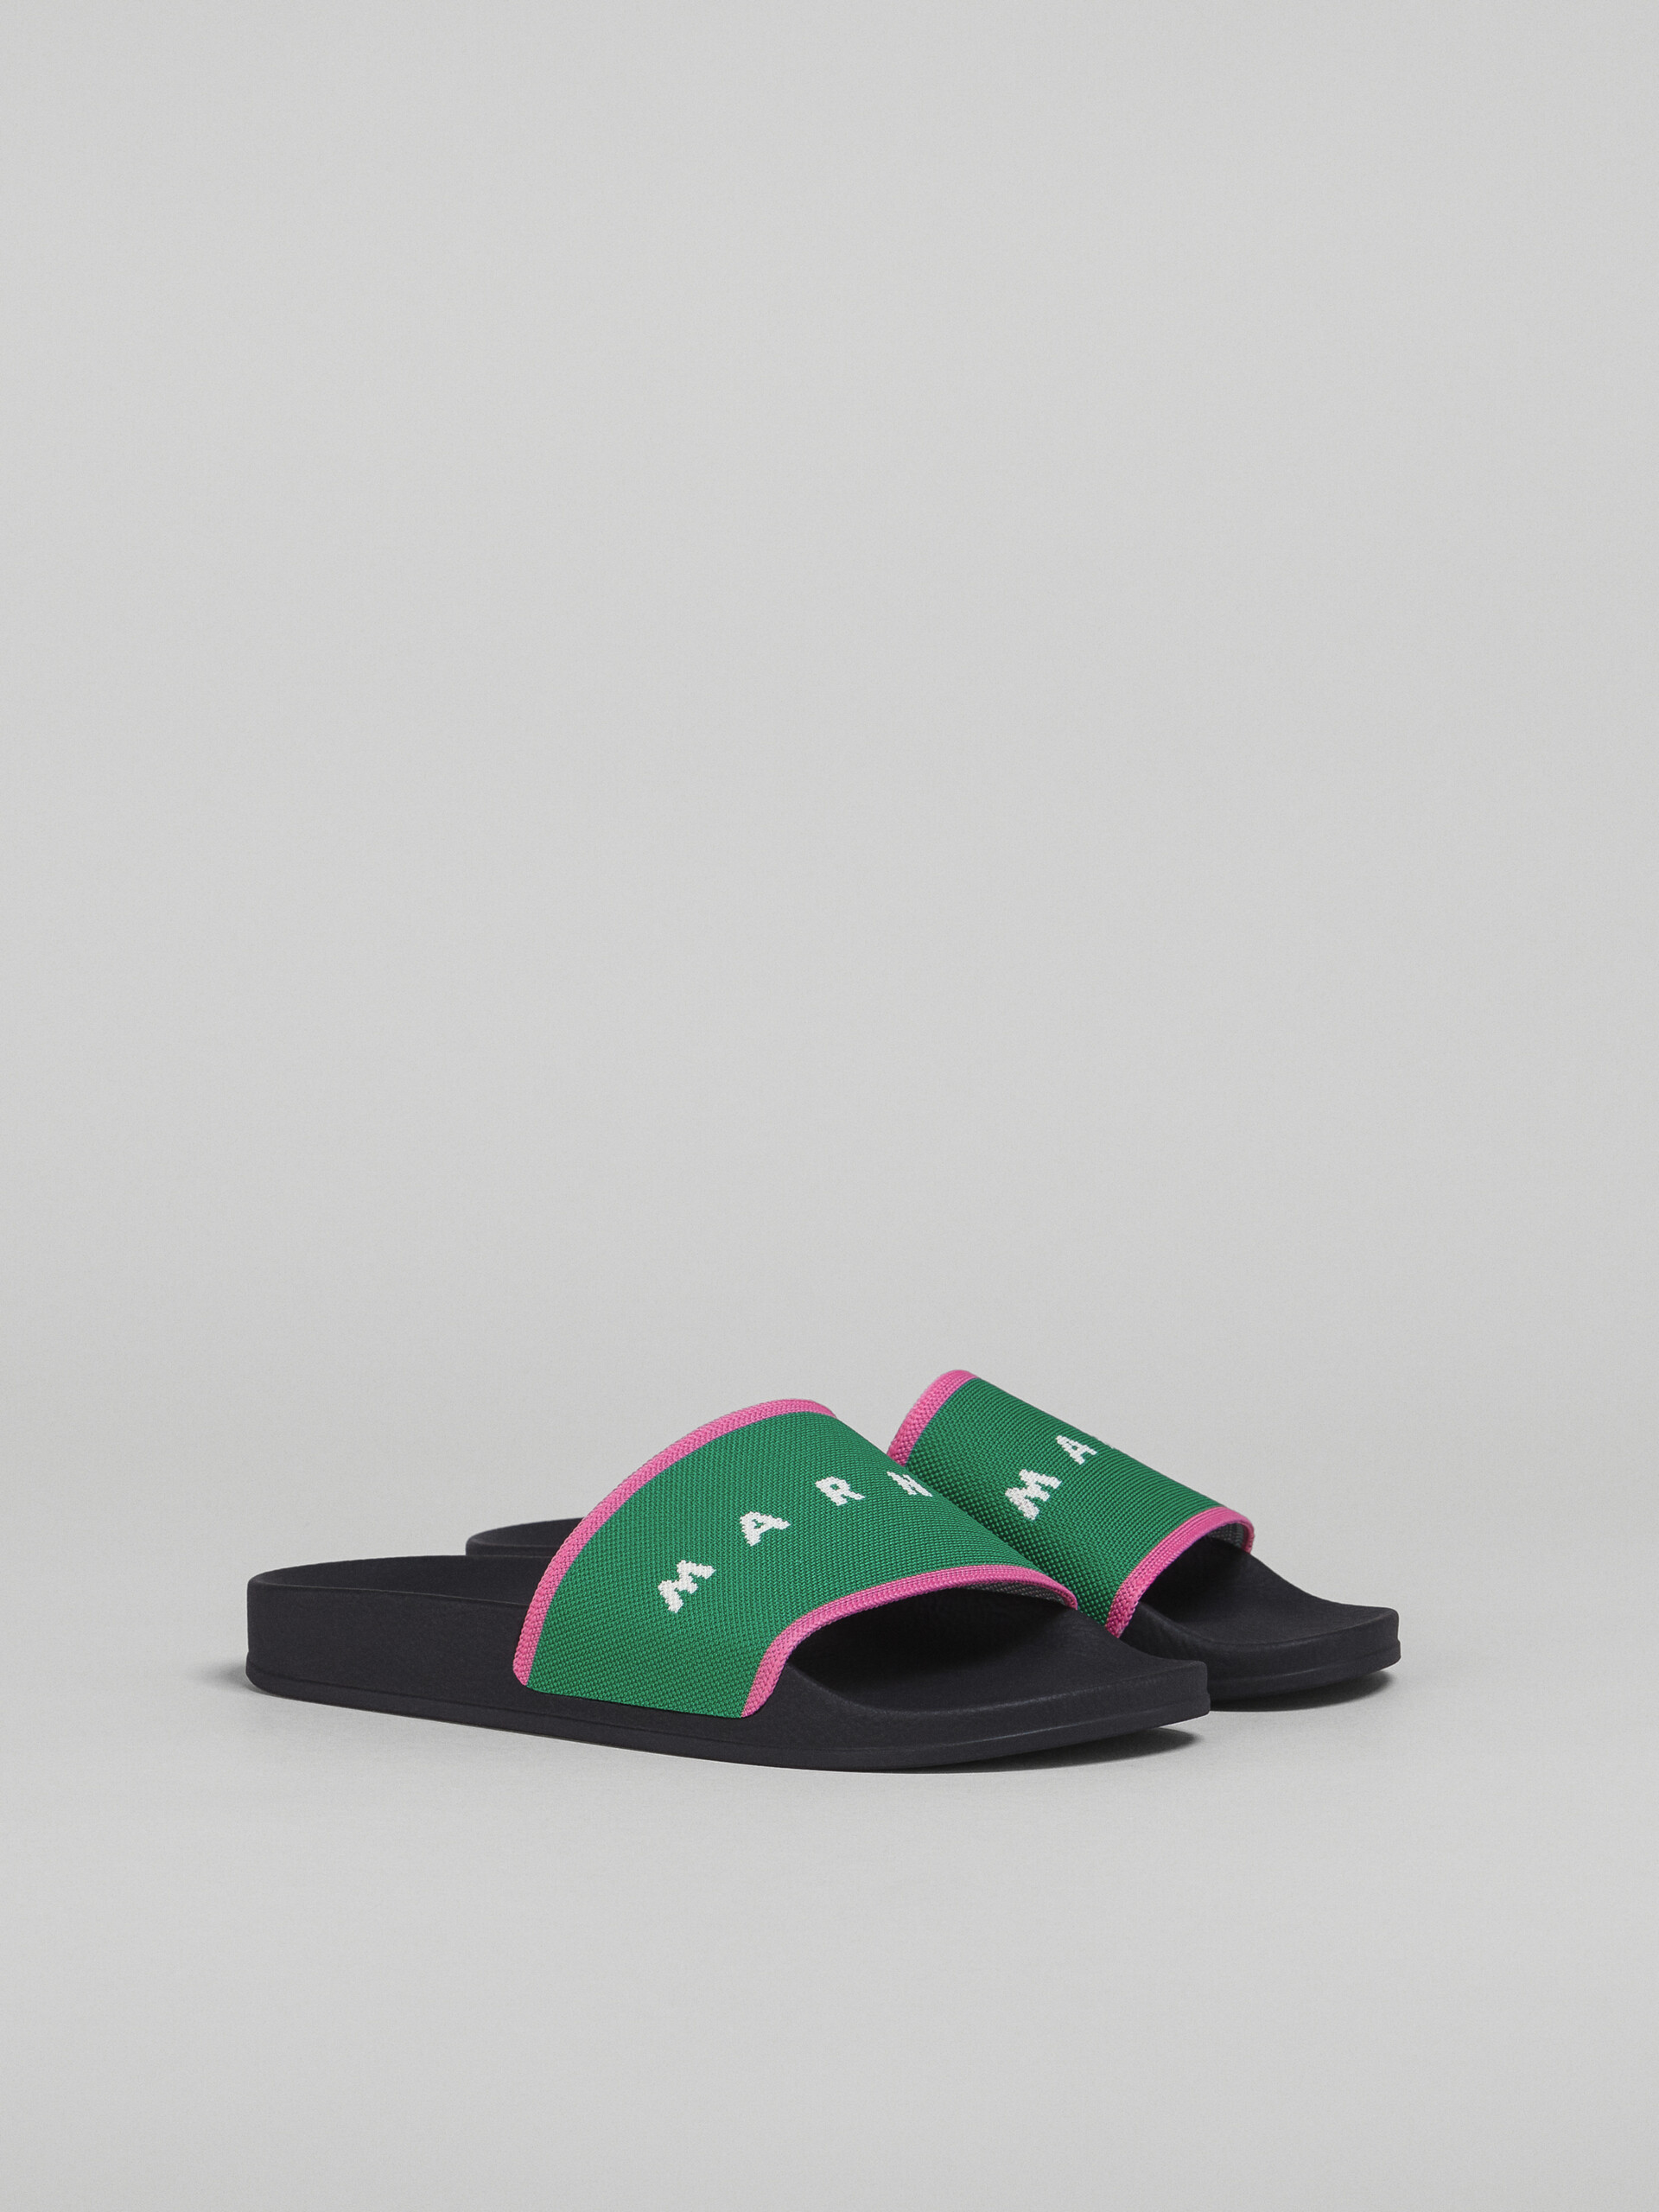 Sandalia de jacquard elástico verde y rosa con logotipo - Sandalias - Image 2